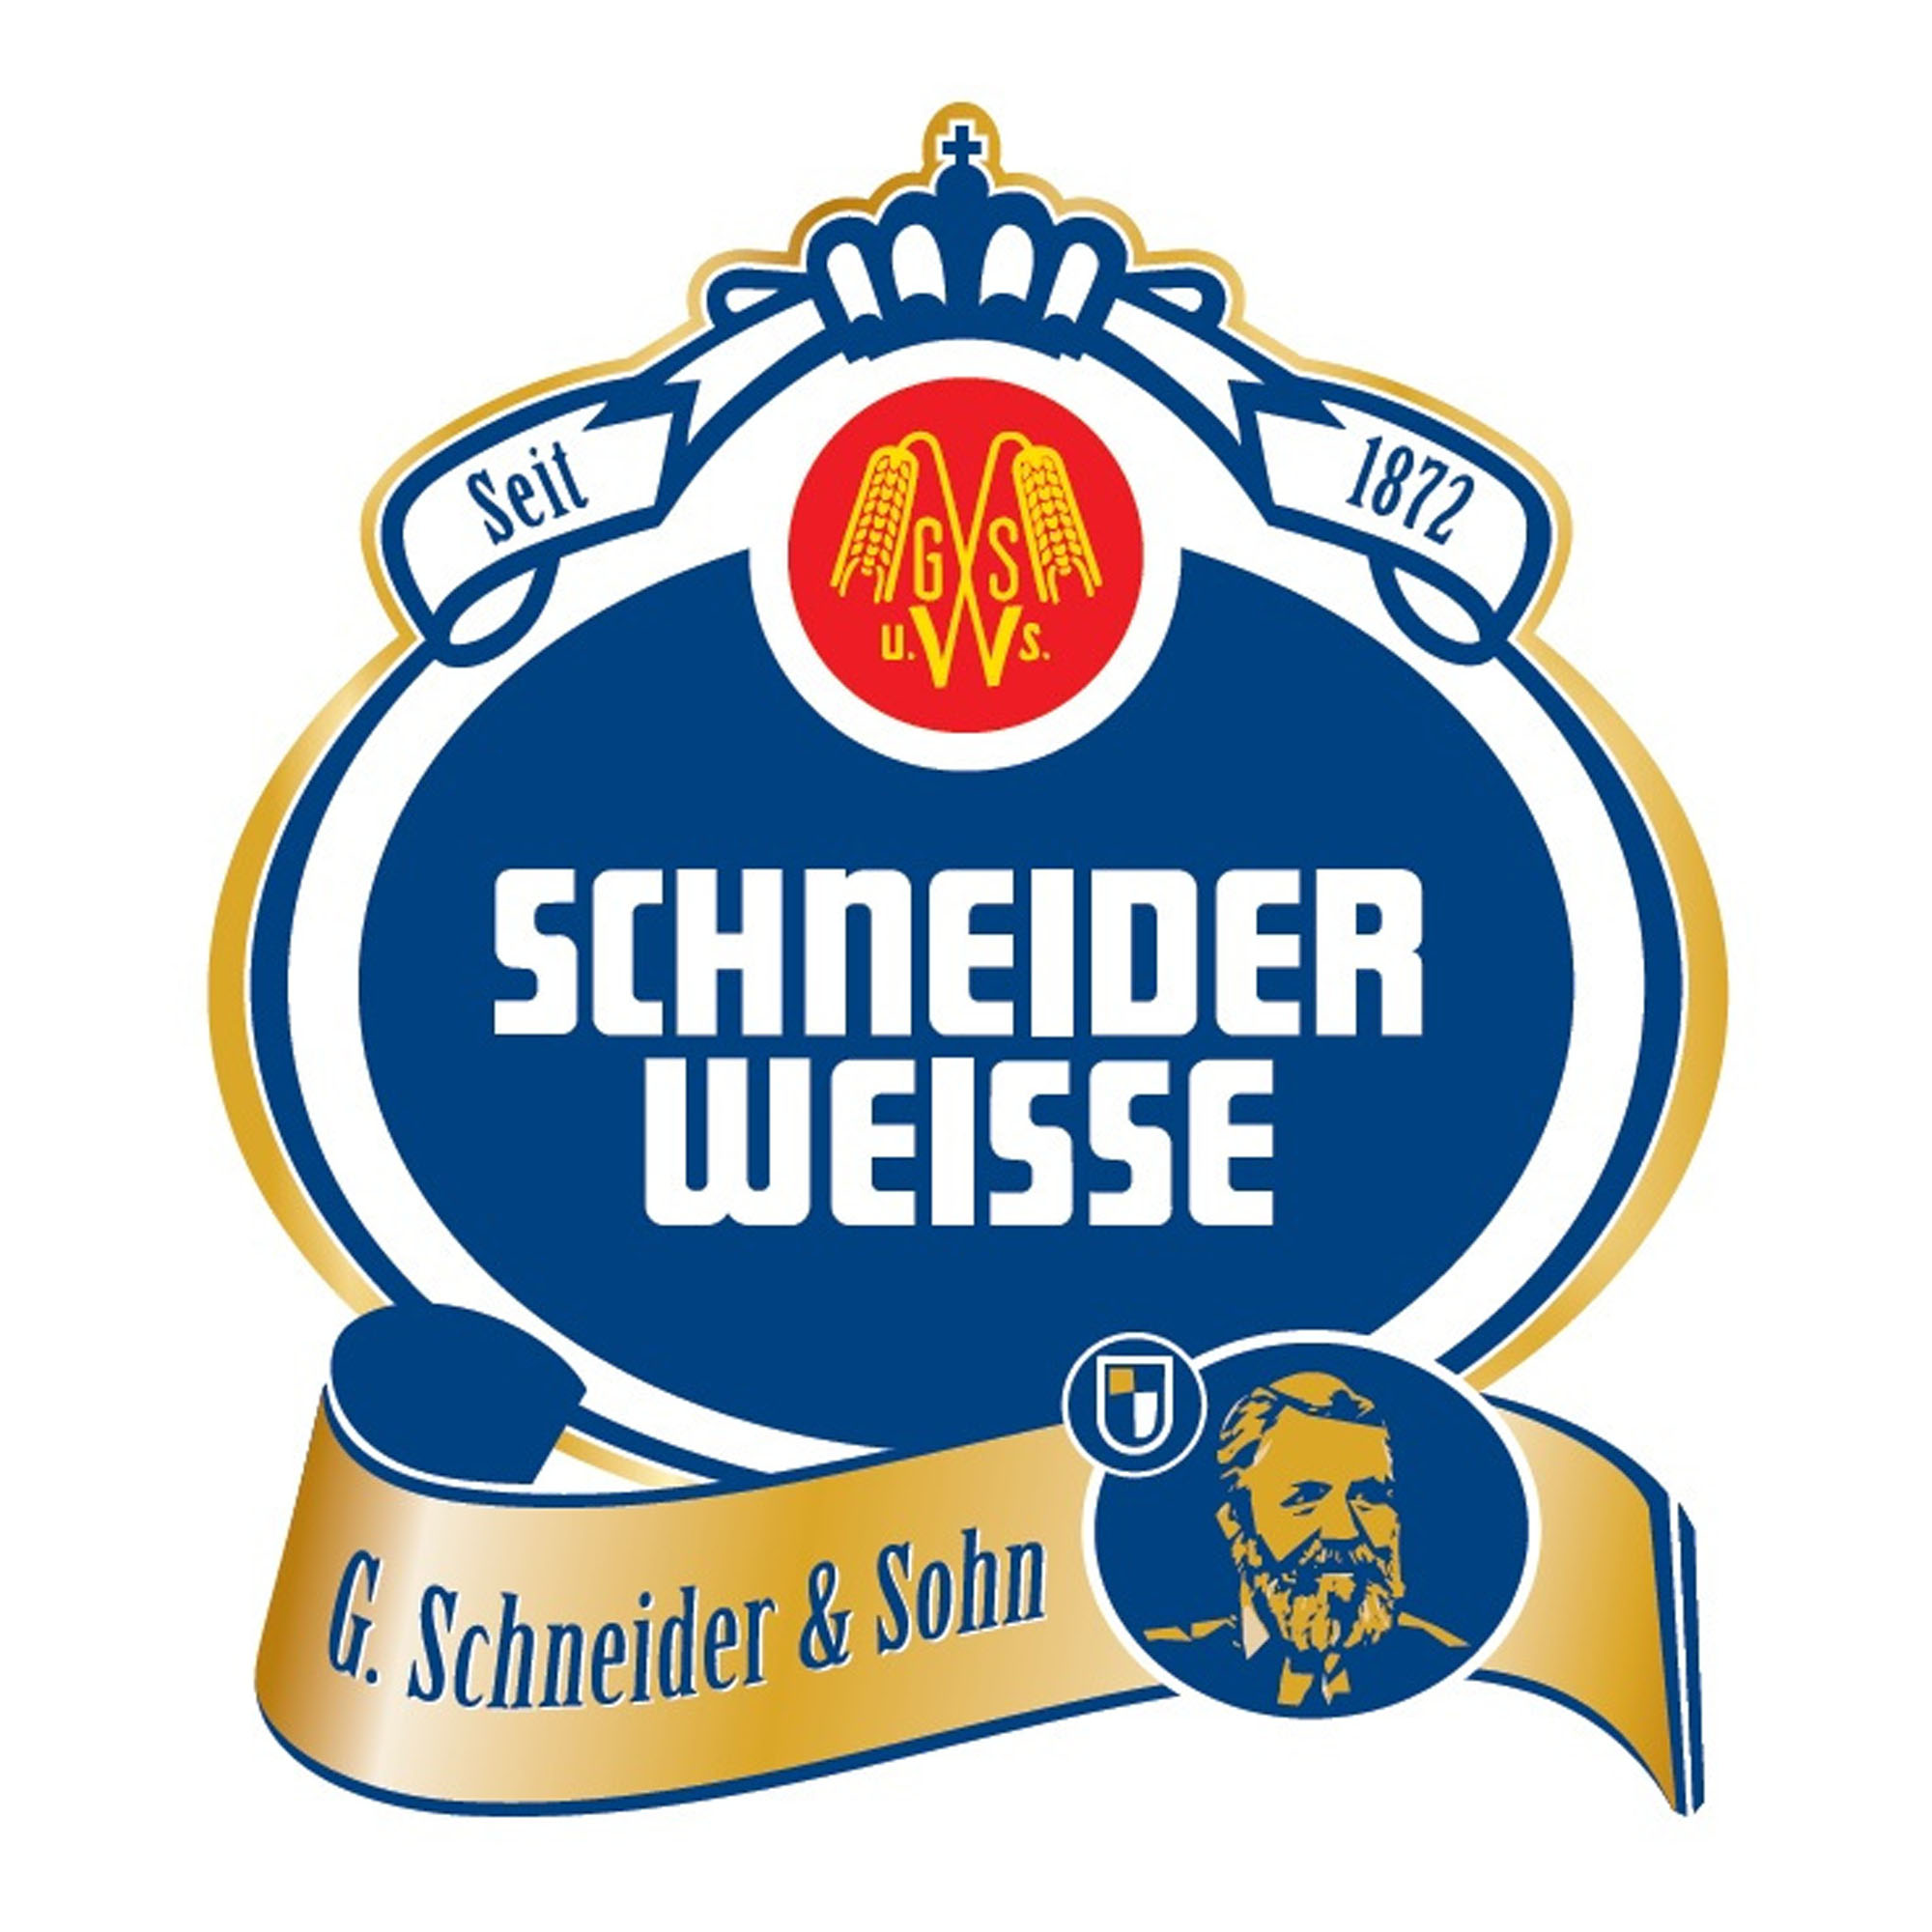 Schneider Weisse Original Tap 7 Fust 20 ltr 5,4%